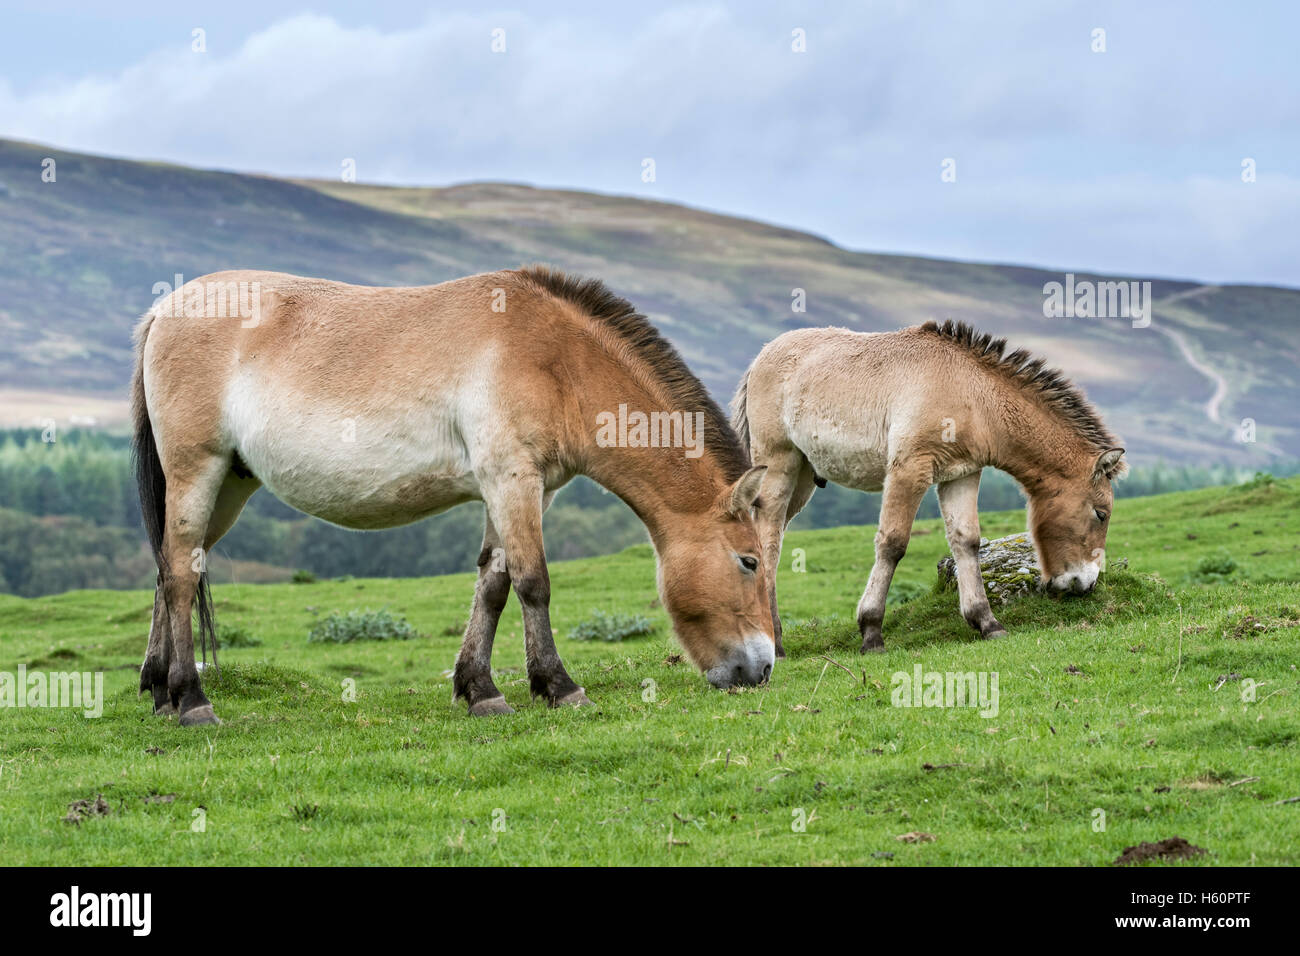 Due cavalli di Przewalski (Equus ferus przewalskii) nativa per le steppe della Mongolia, in Asia centrale che pascolano nella prateria Foto Stock